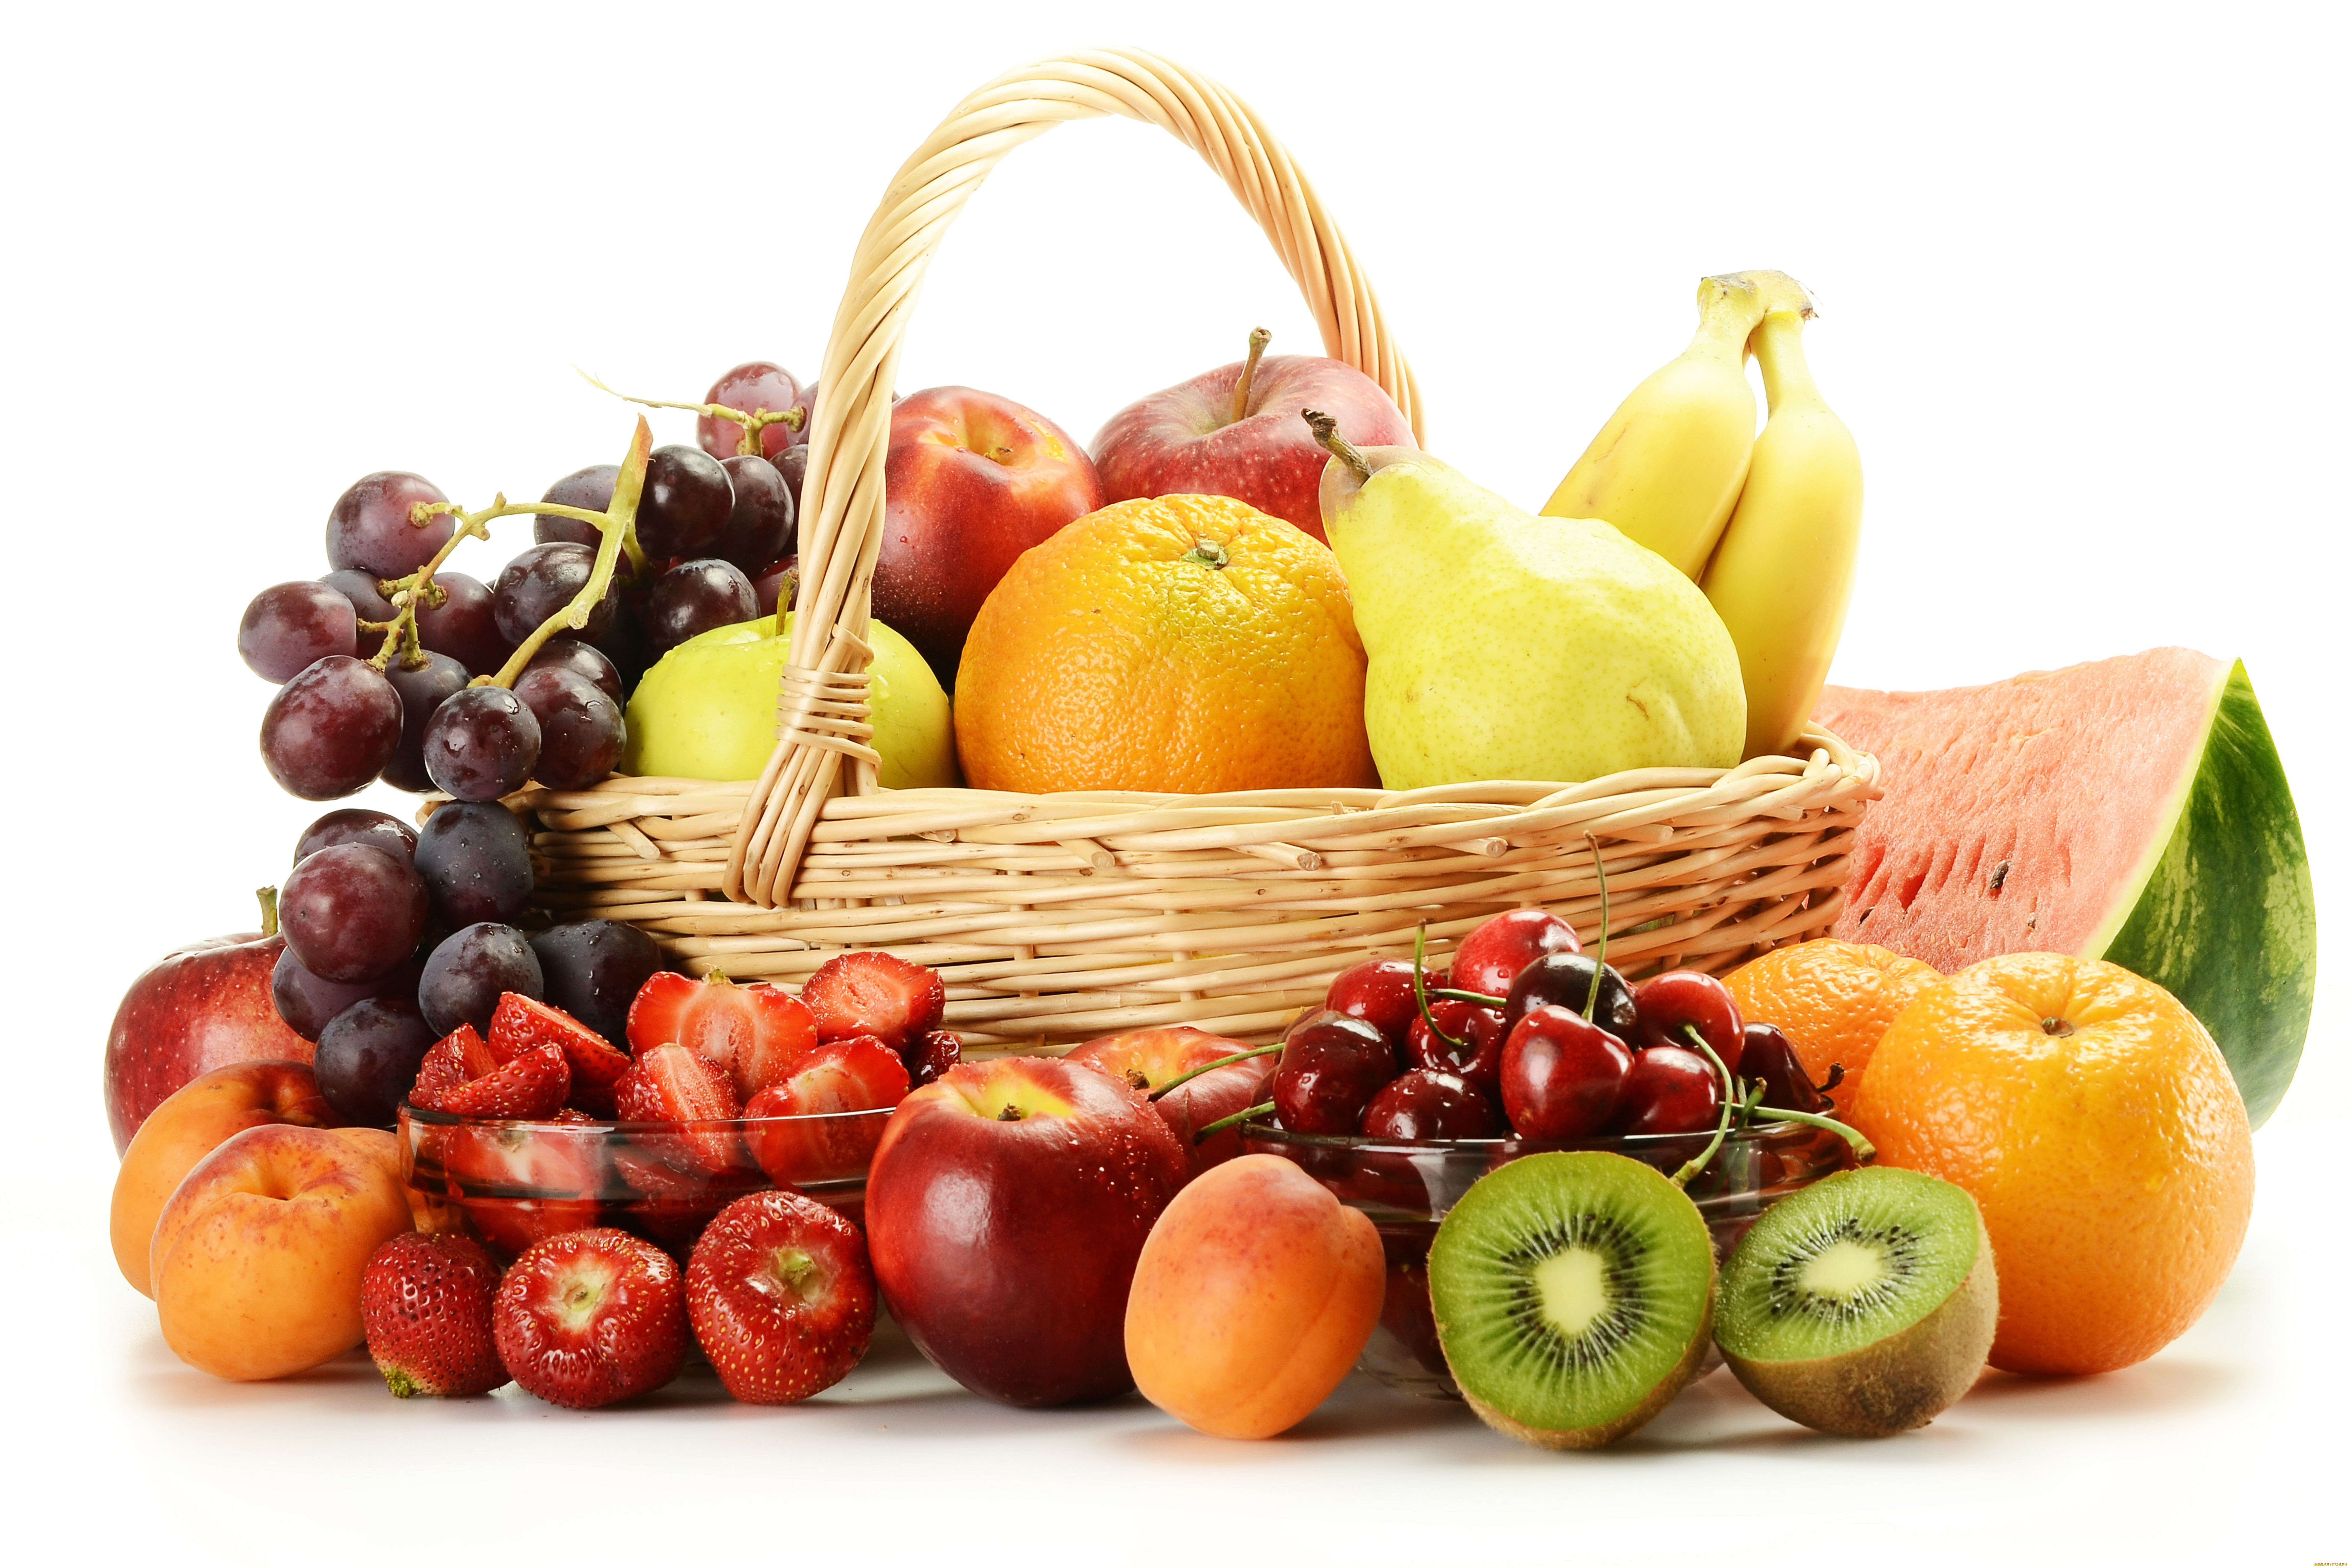 еда, фрукты, ягоды, киви, виноград, яблоки, груши, абрикосы, арбуз, бананы, апельсины, черешня, клубника, корзинка